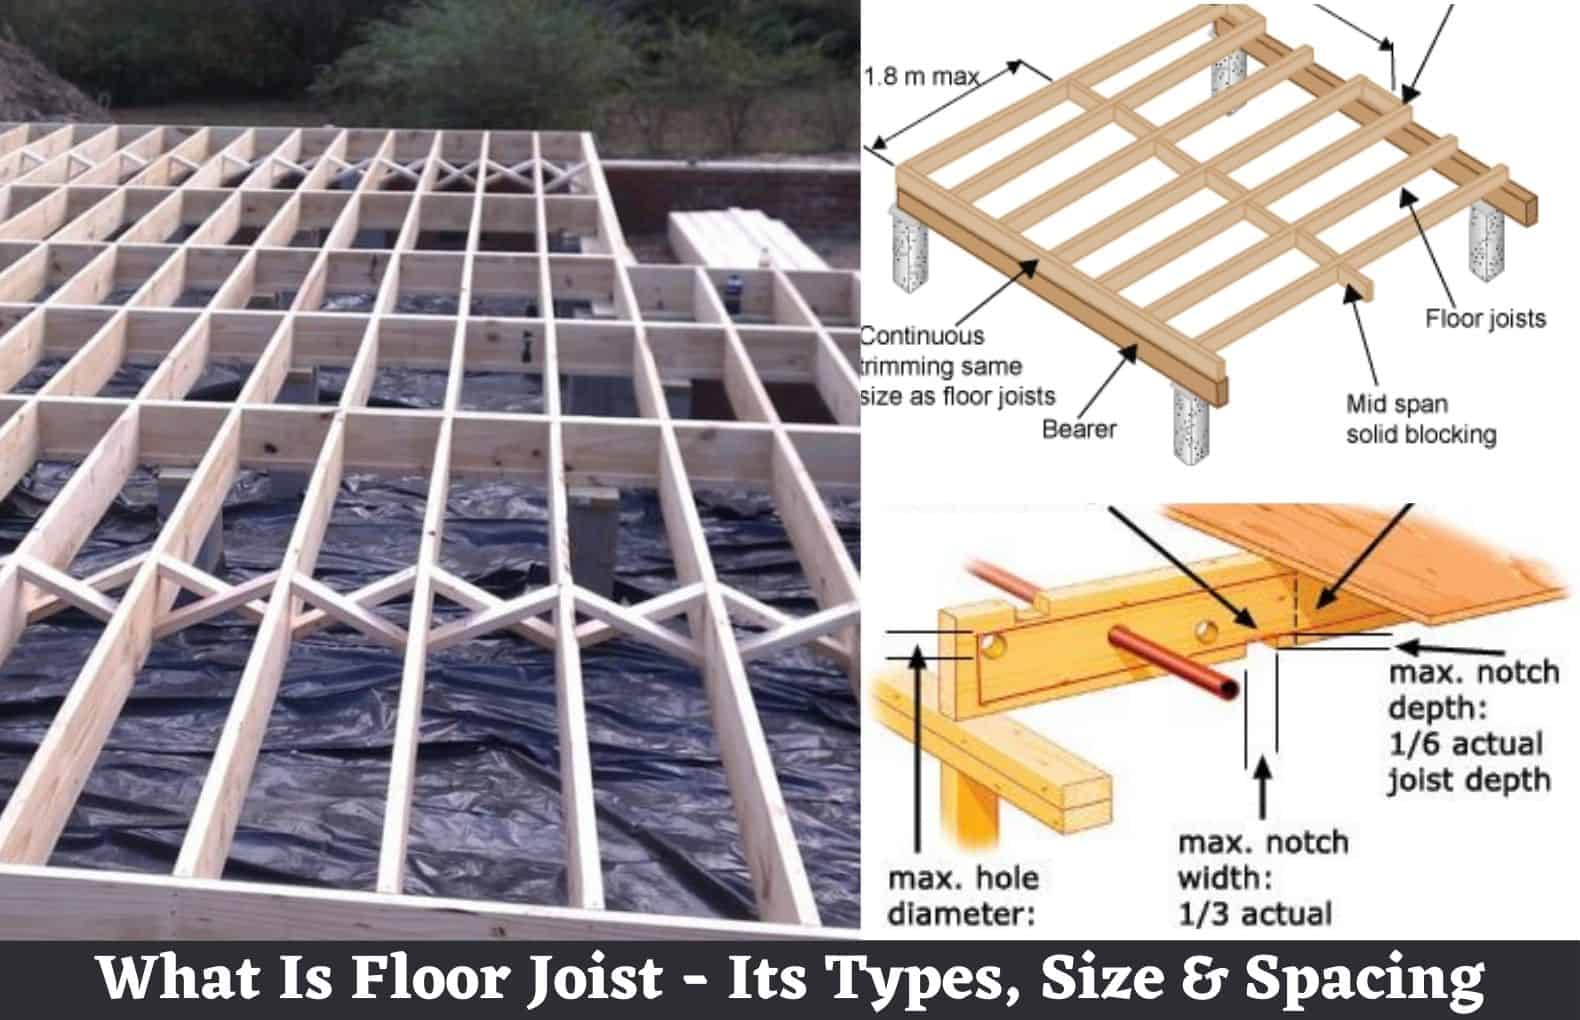 What Is Floor Joists | 3 Types Of Floor Joists | Floor Joist Spacing ...